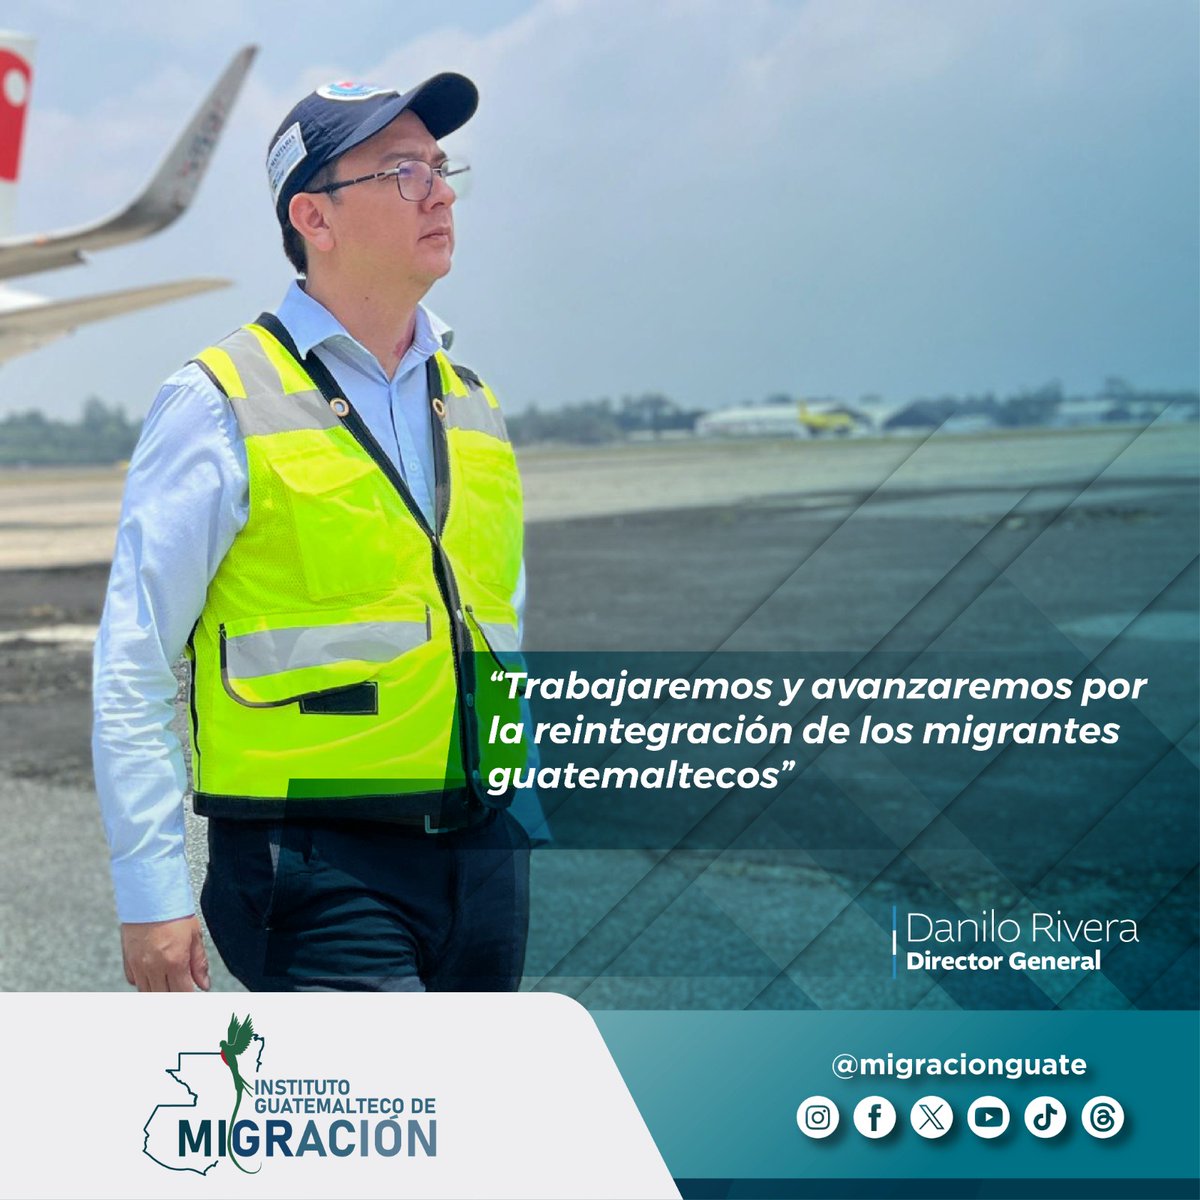 #InformaciónIGM | El director general de @MigracionGuate, reitera su compromiso con la población migrante guatemalteca retornada.